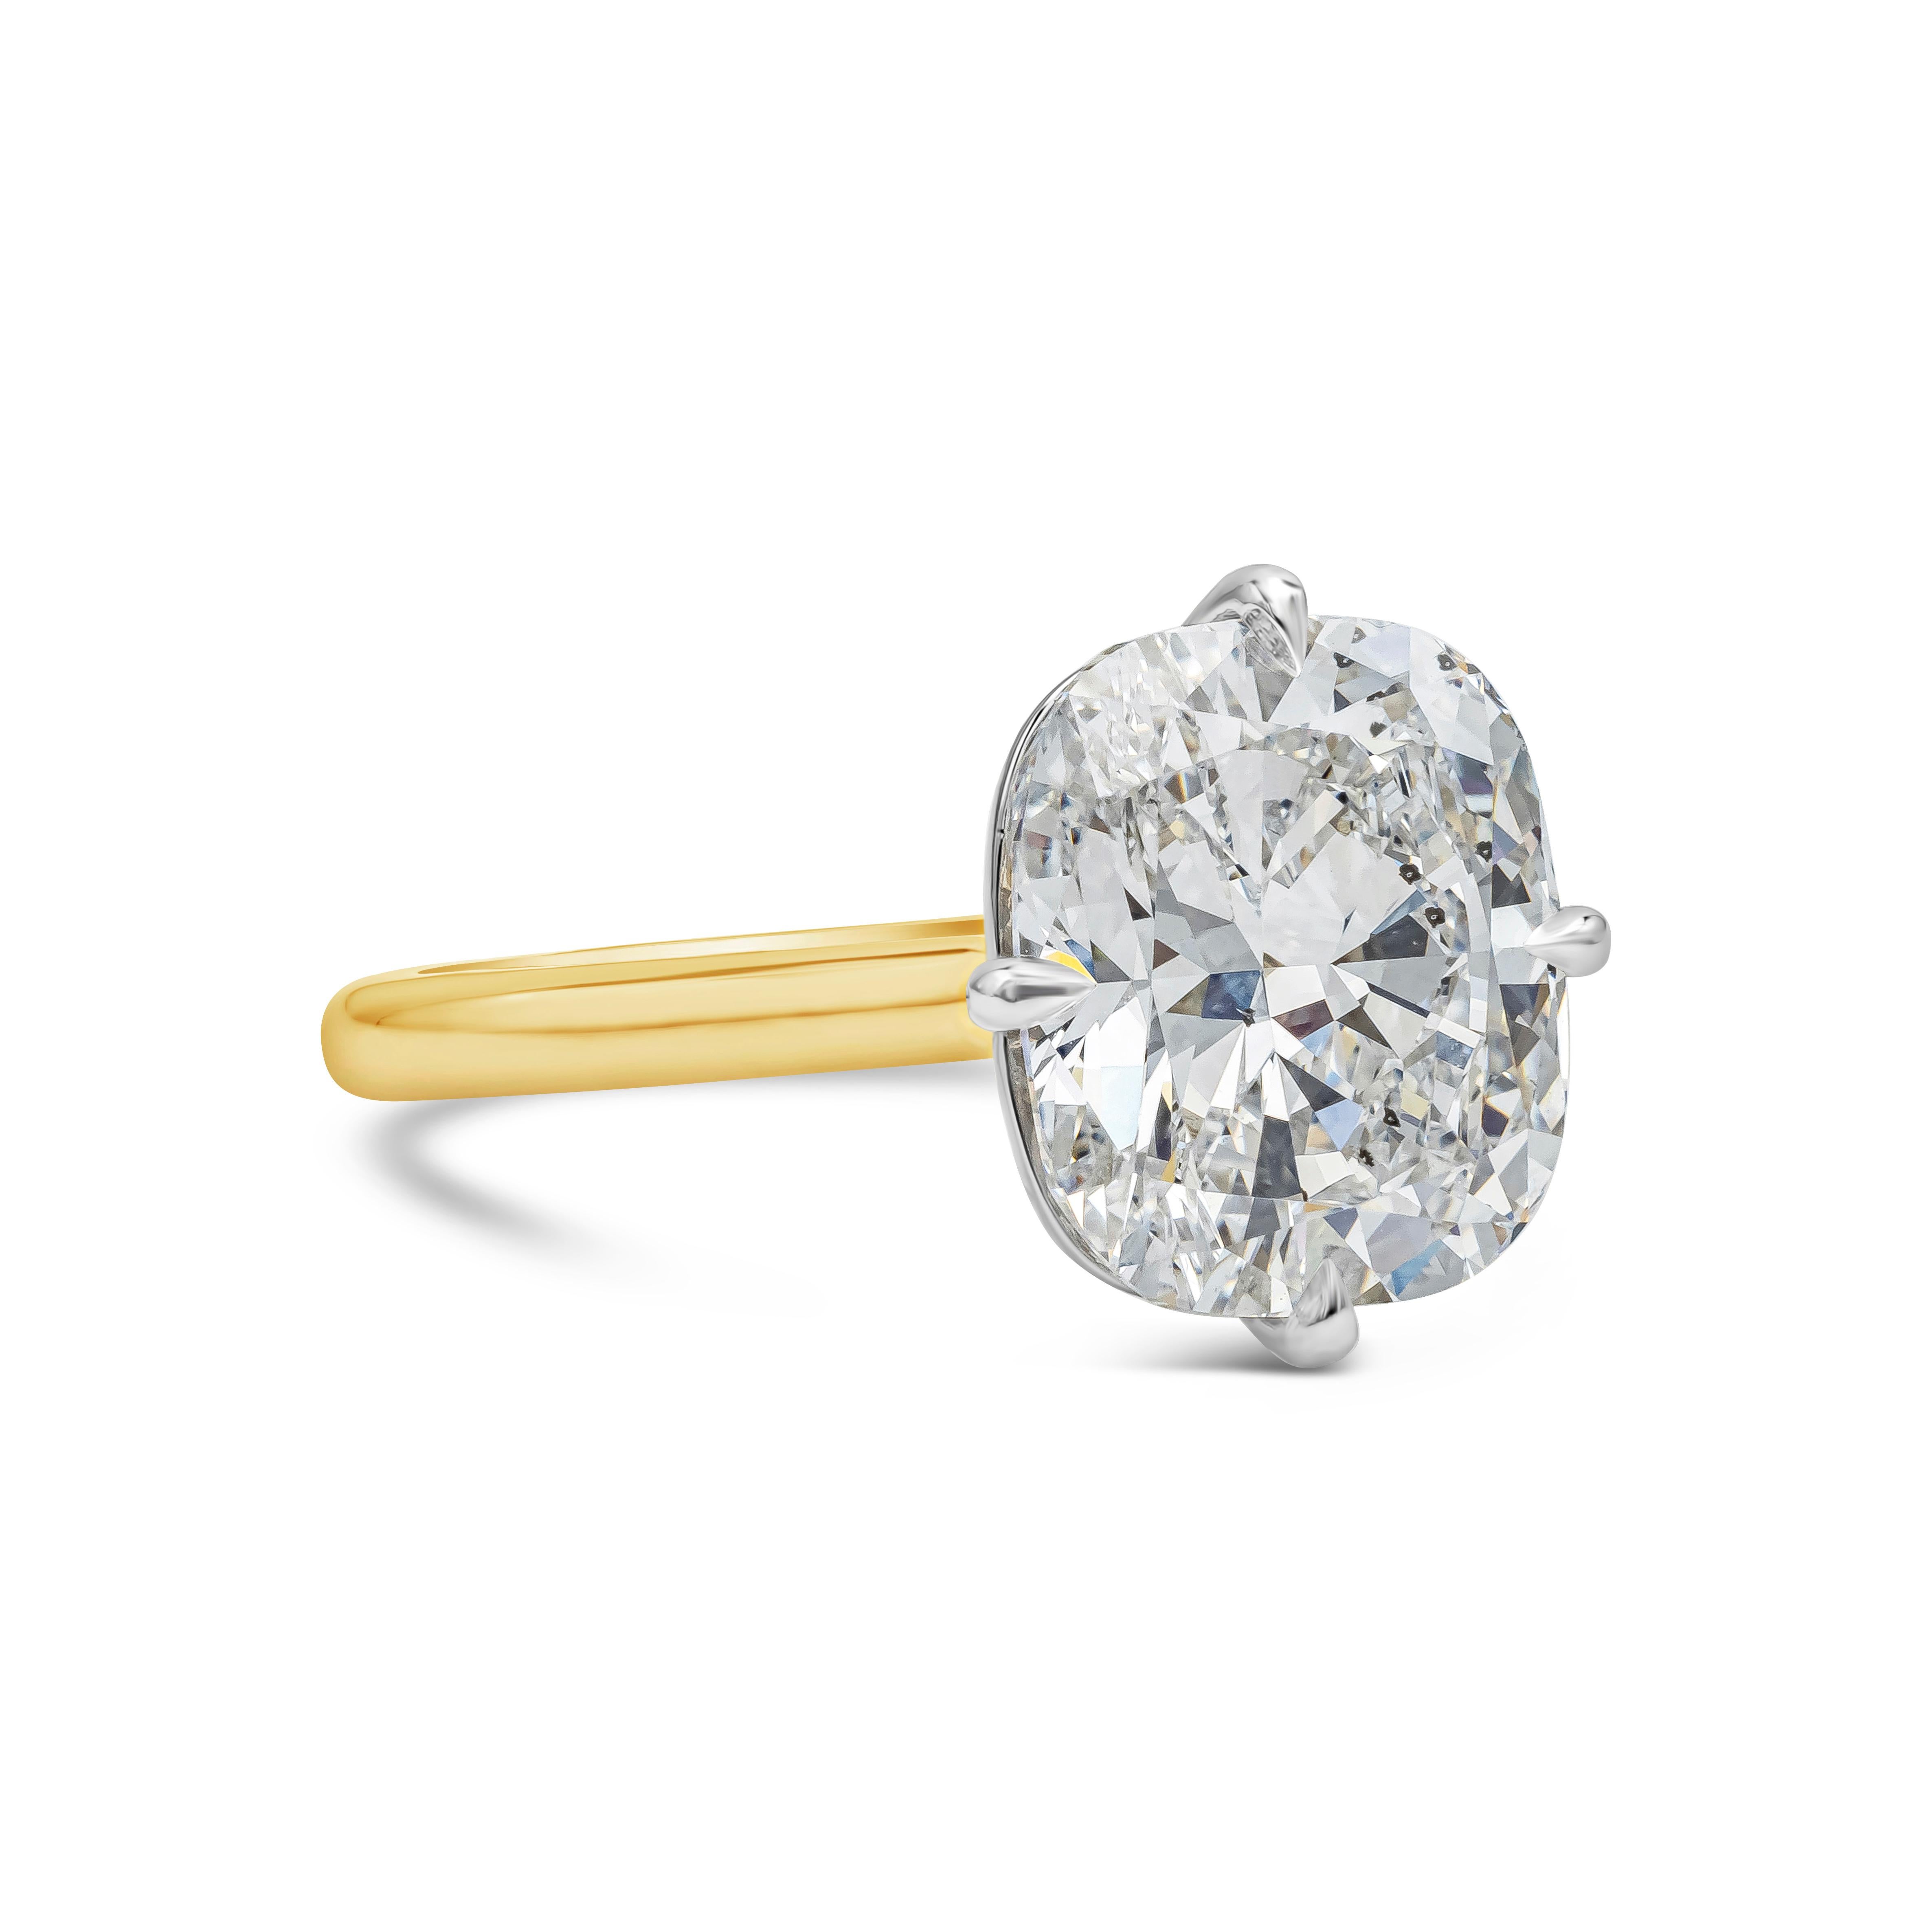 Une magnifique bague de fiançailles mettant en valeur un diamant taille coussin de 5,02 carats certifié par le GIA, de couleur D et de pureté SI2. Le tout dans une corbeille à compas unique en platine. La corbeille est sertie dans un fin bracelet en